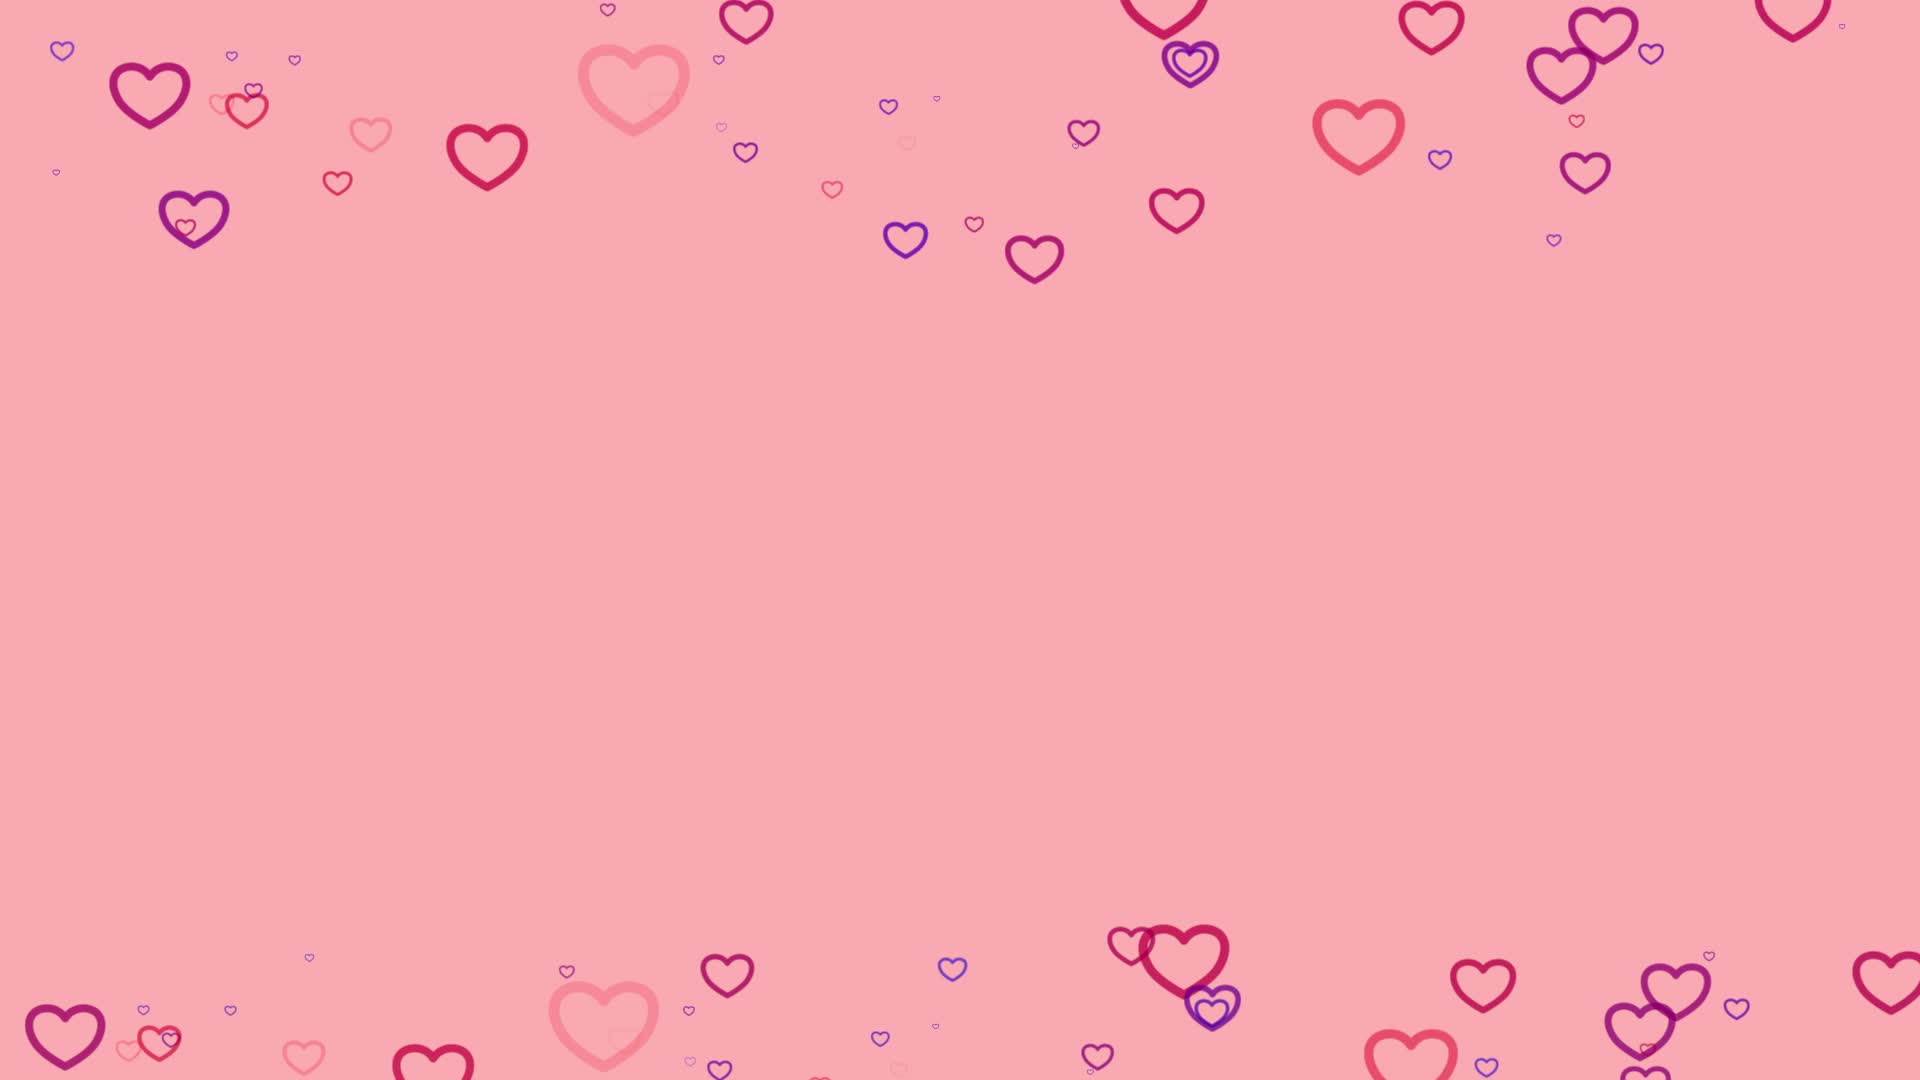 150 Hearts ideas in 2023  heart wallpaper i love heart love heart